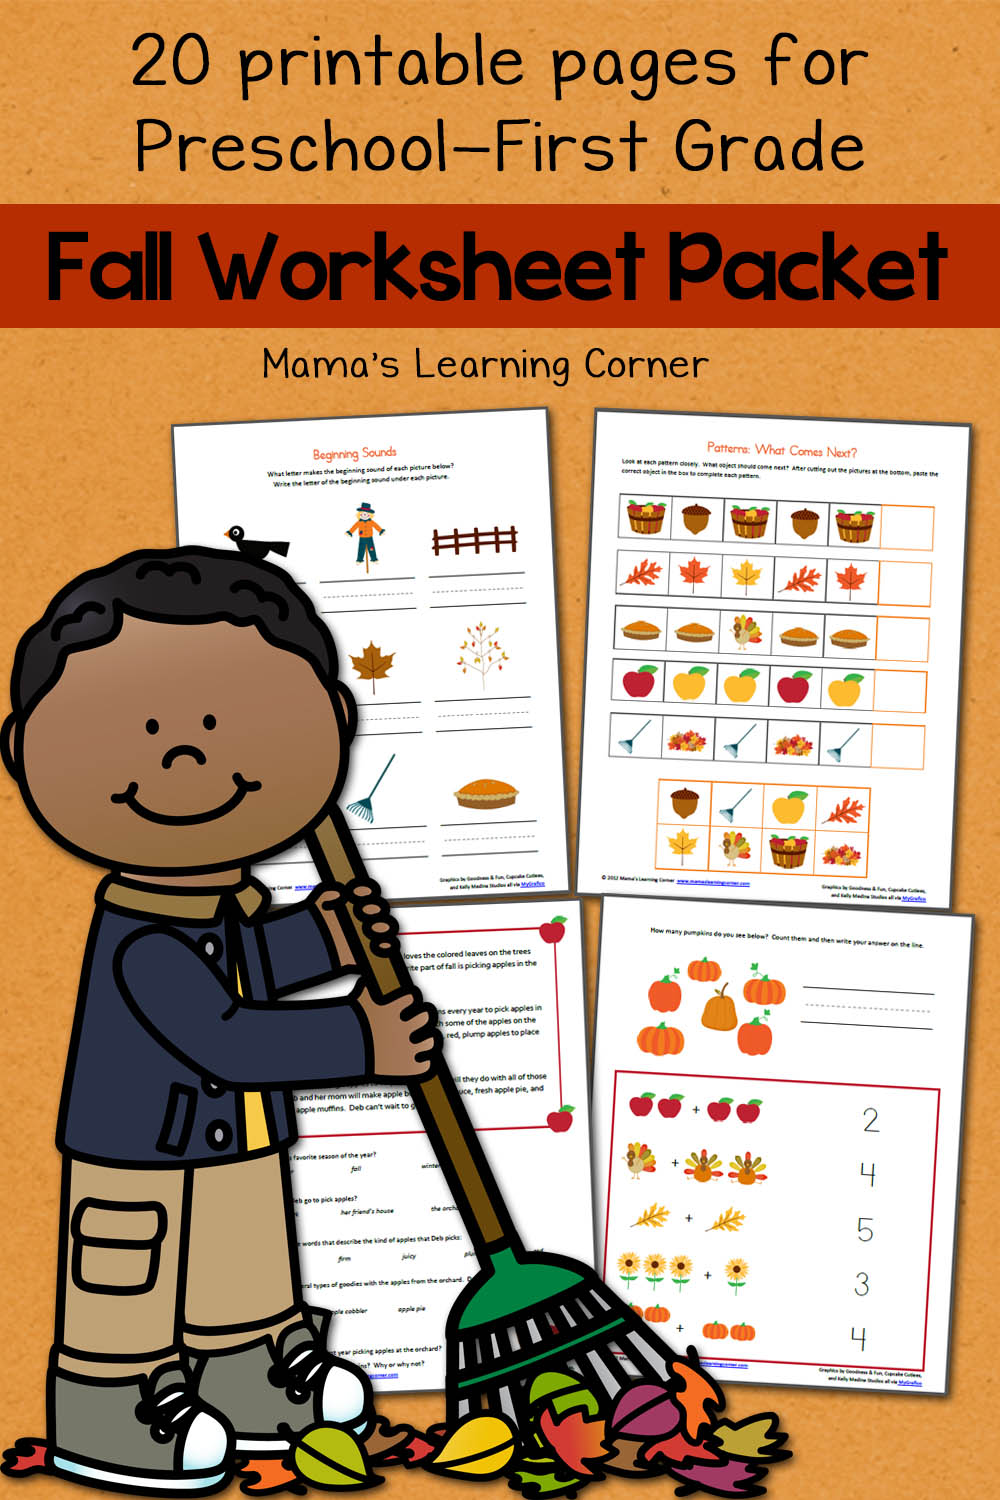 Fall Worksheet Packet for Preschool - First Grade